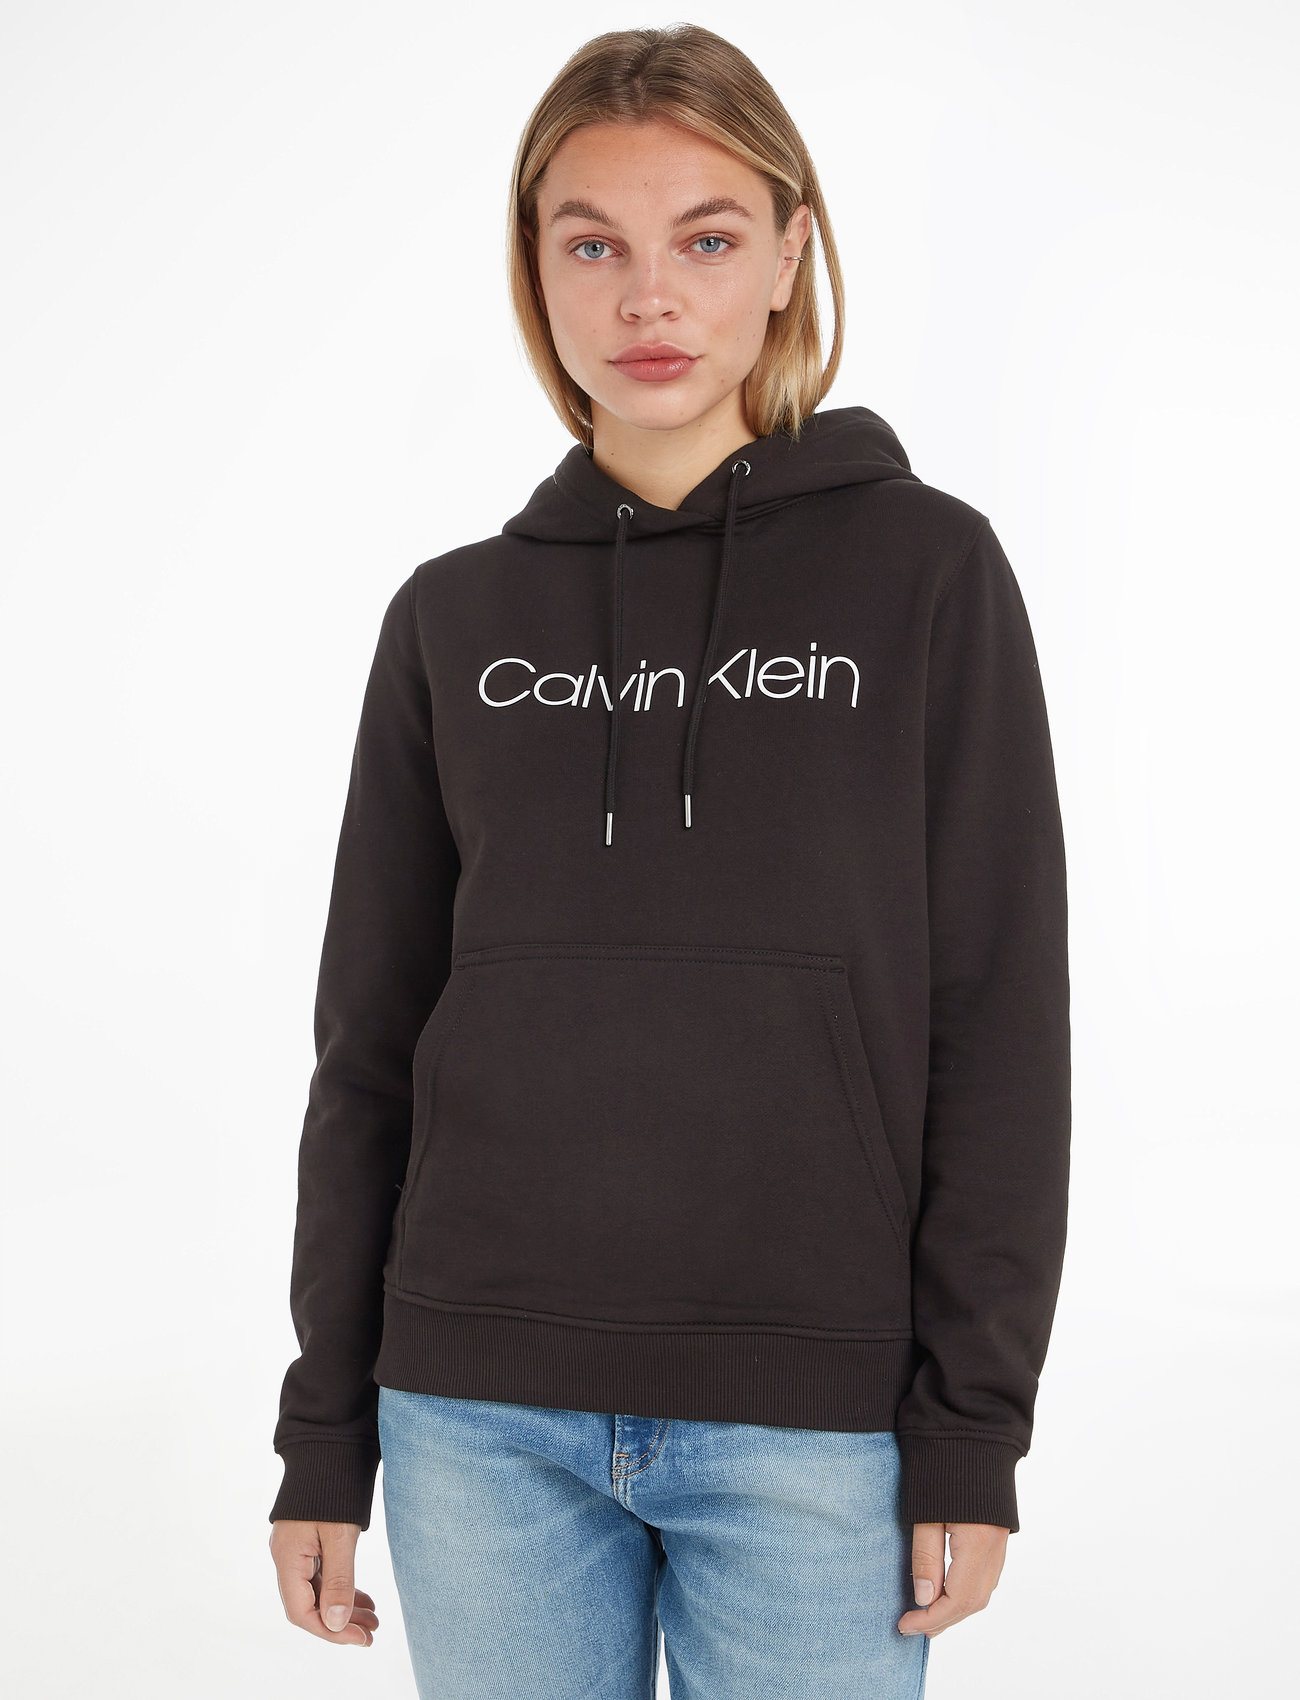 bryder daggry Rejsende købmand selvbiografi Calvin Klein Core Logo Ls Hoodie - Hættetrøjer - Boozt.com